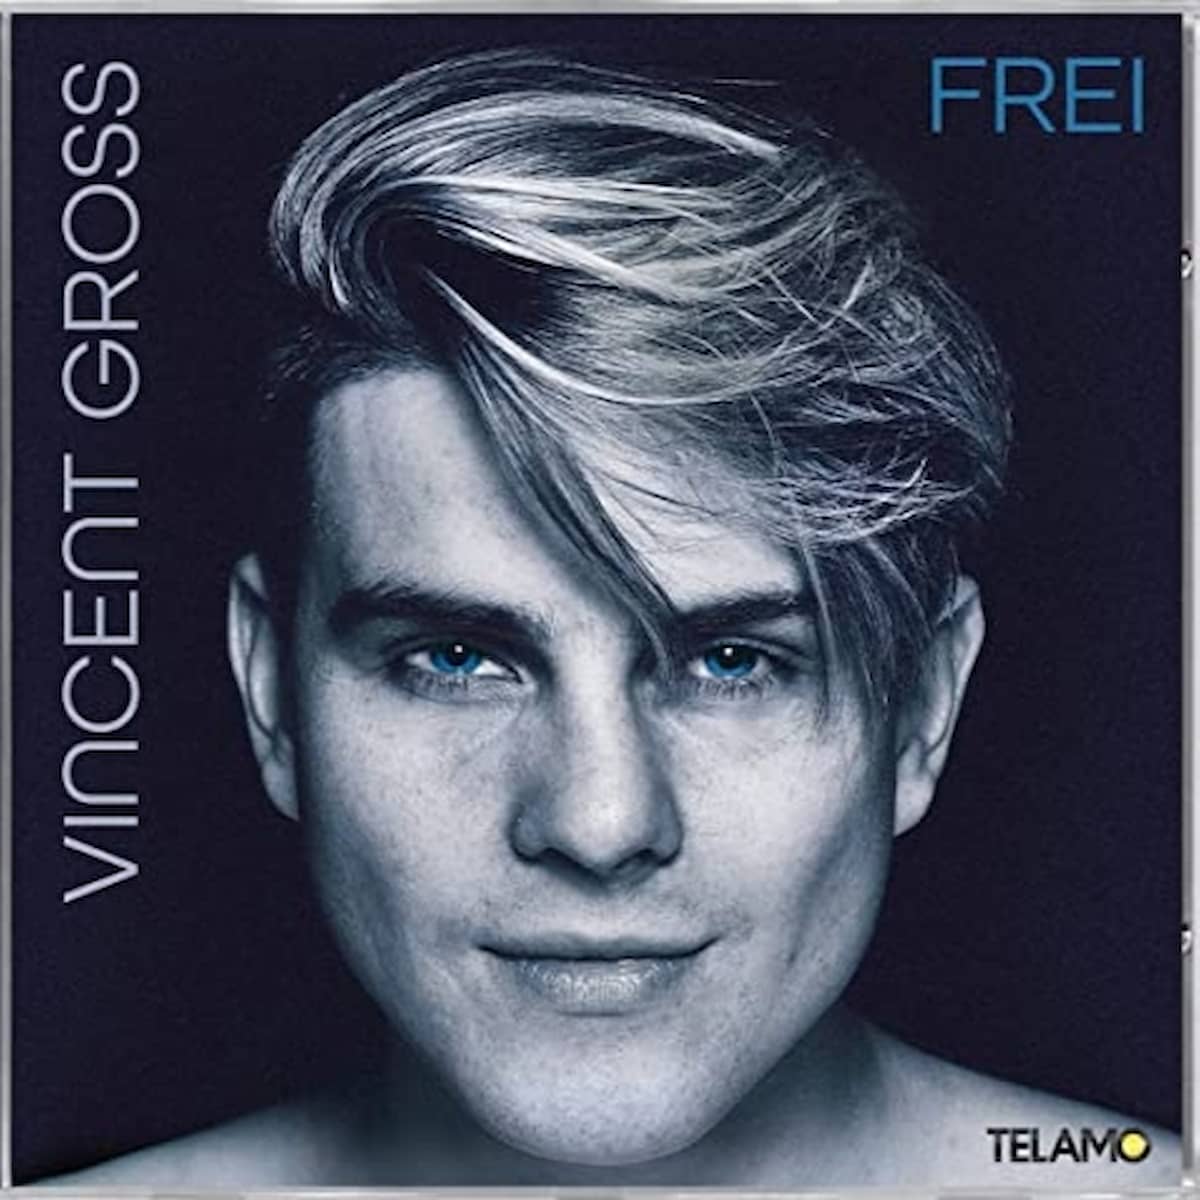 Vincent Gross 2022 - Neue Schlager-CD “Frei” veröffentlicht - hier im Bild das Album-Cover mit einem Porträt von Vincent Gross